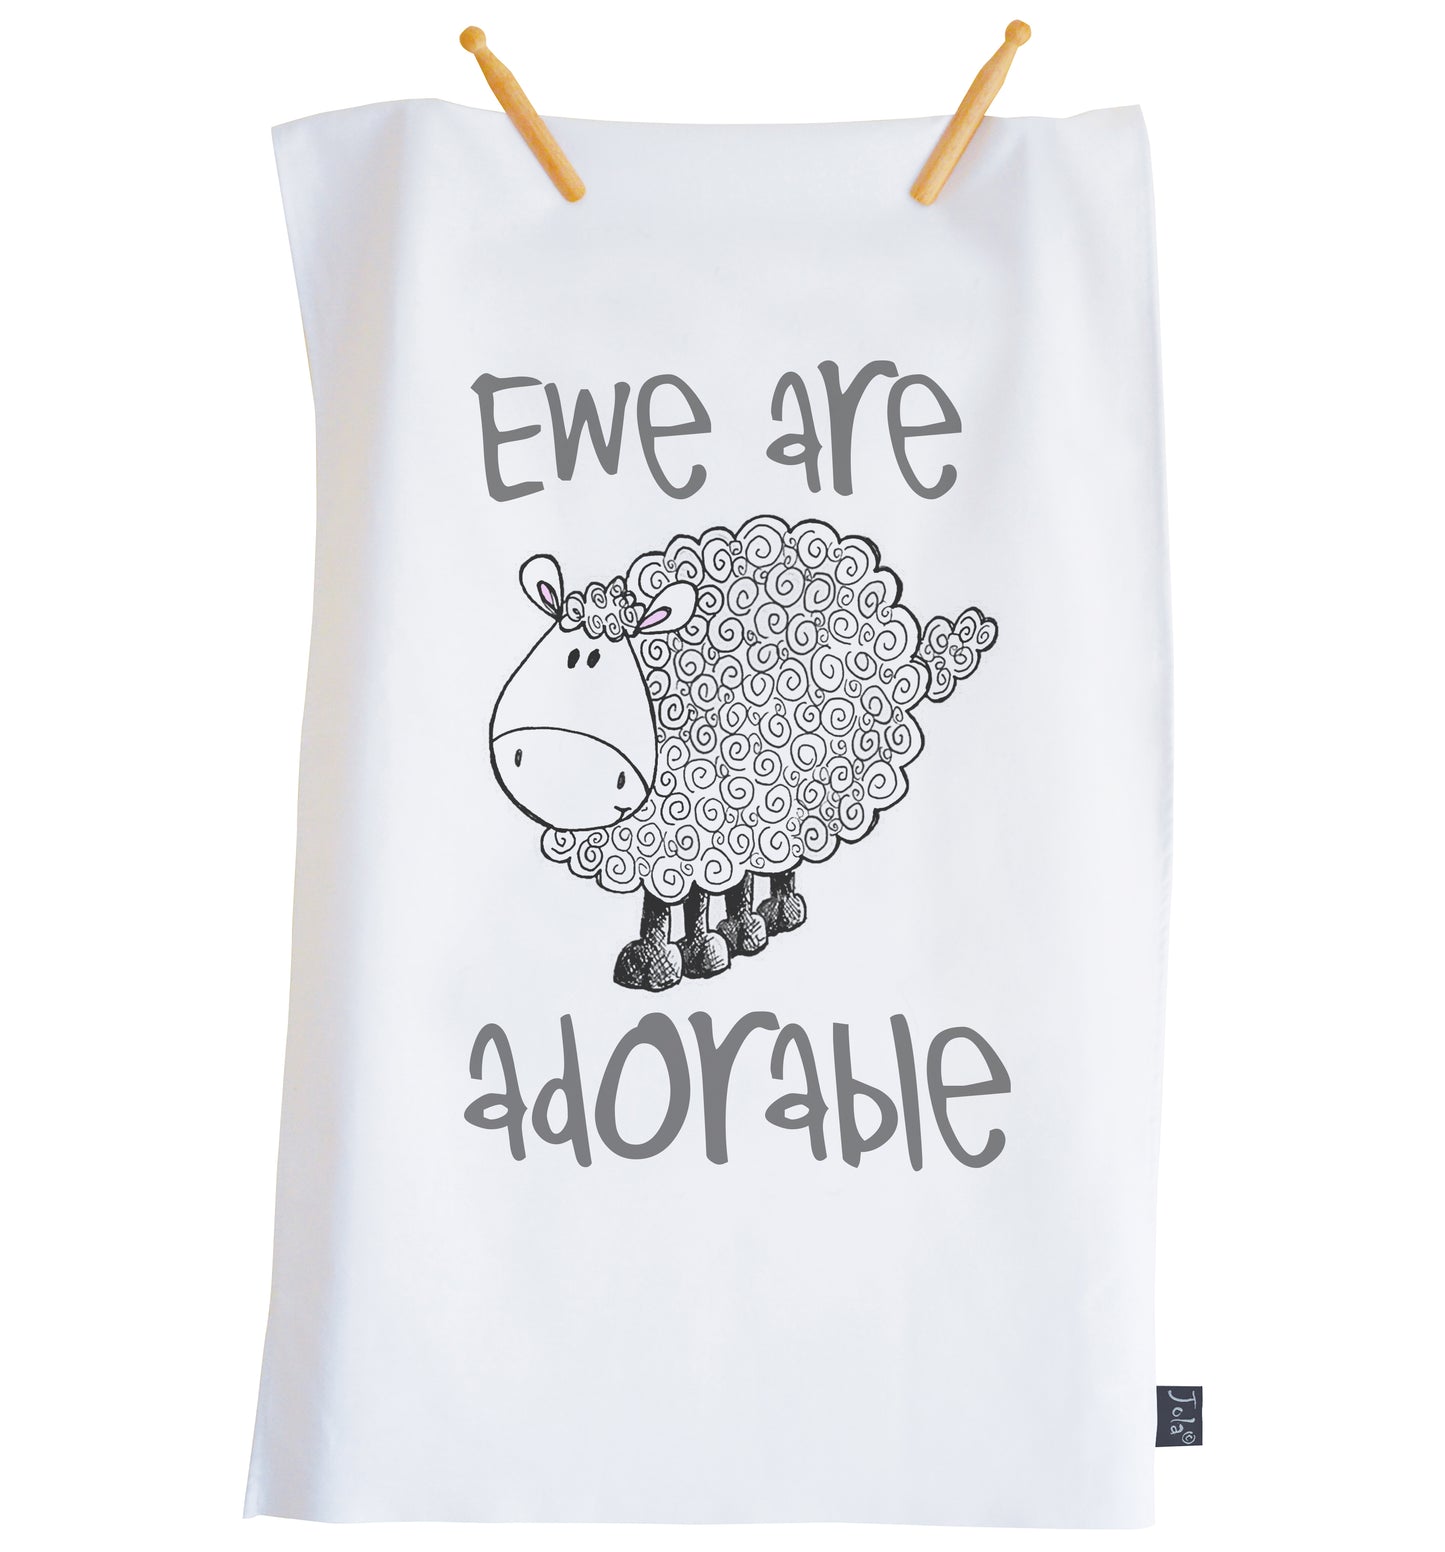 Ewe are adorable tea towel